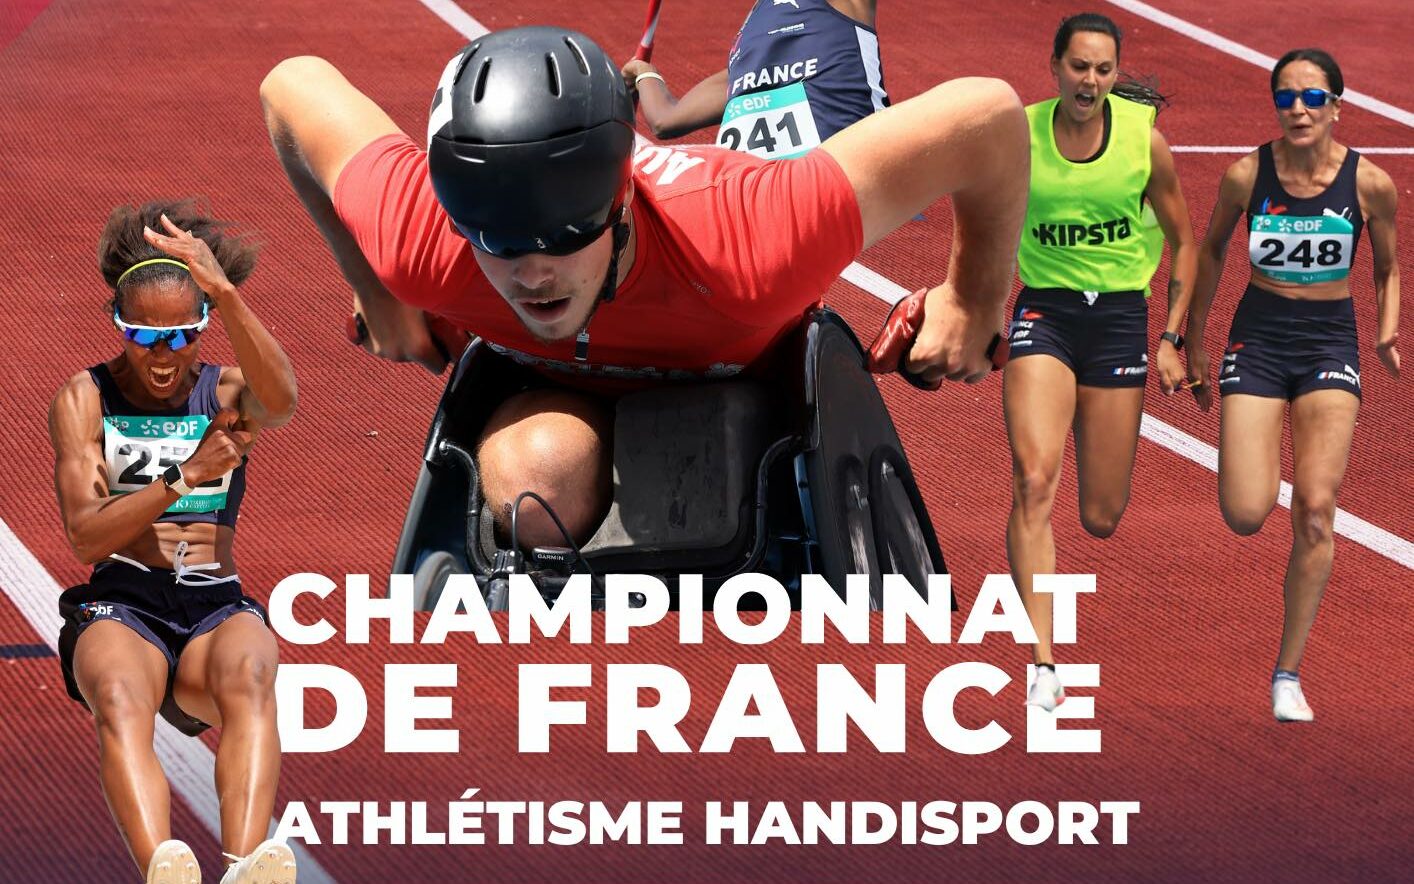 18 asémistes au Championnat de France Handisport ...